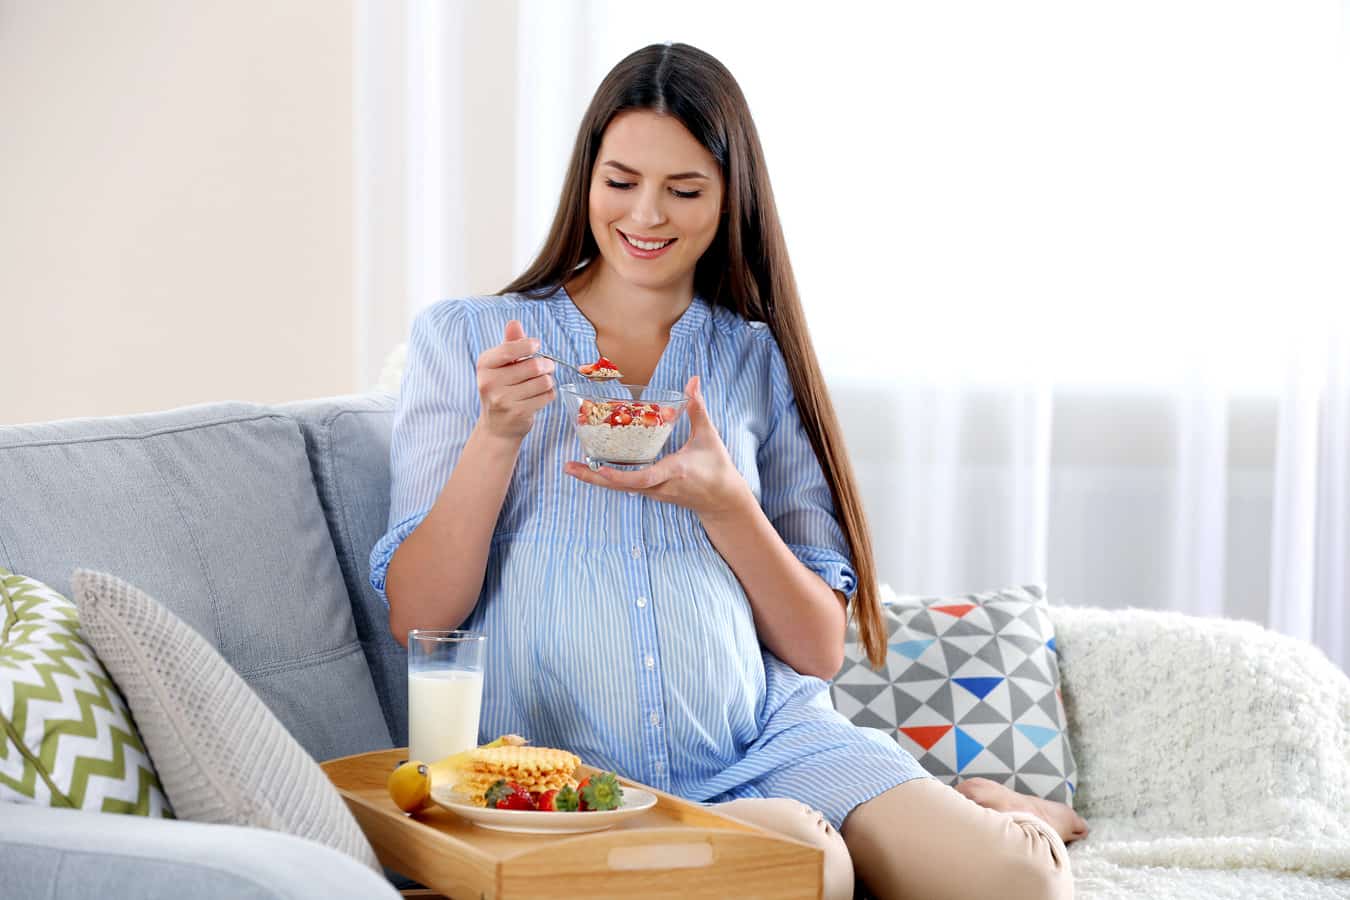 Kebutuhan kalsium ibu hamil meningkat daripada saat tidak hamil